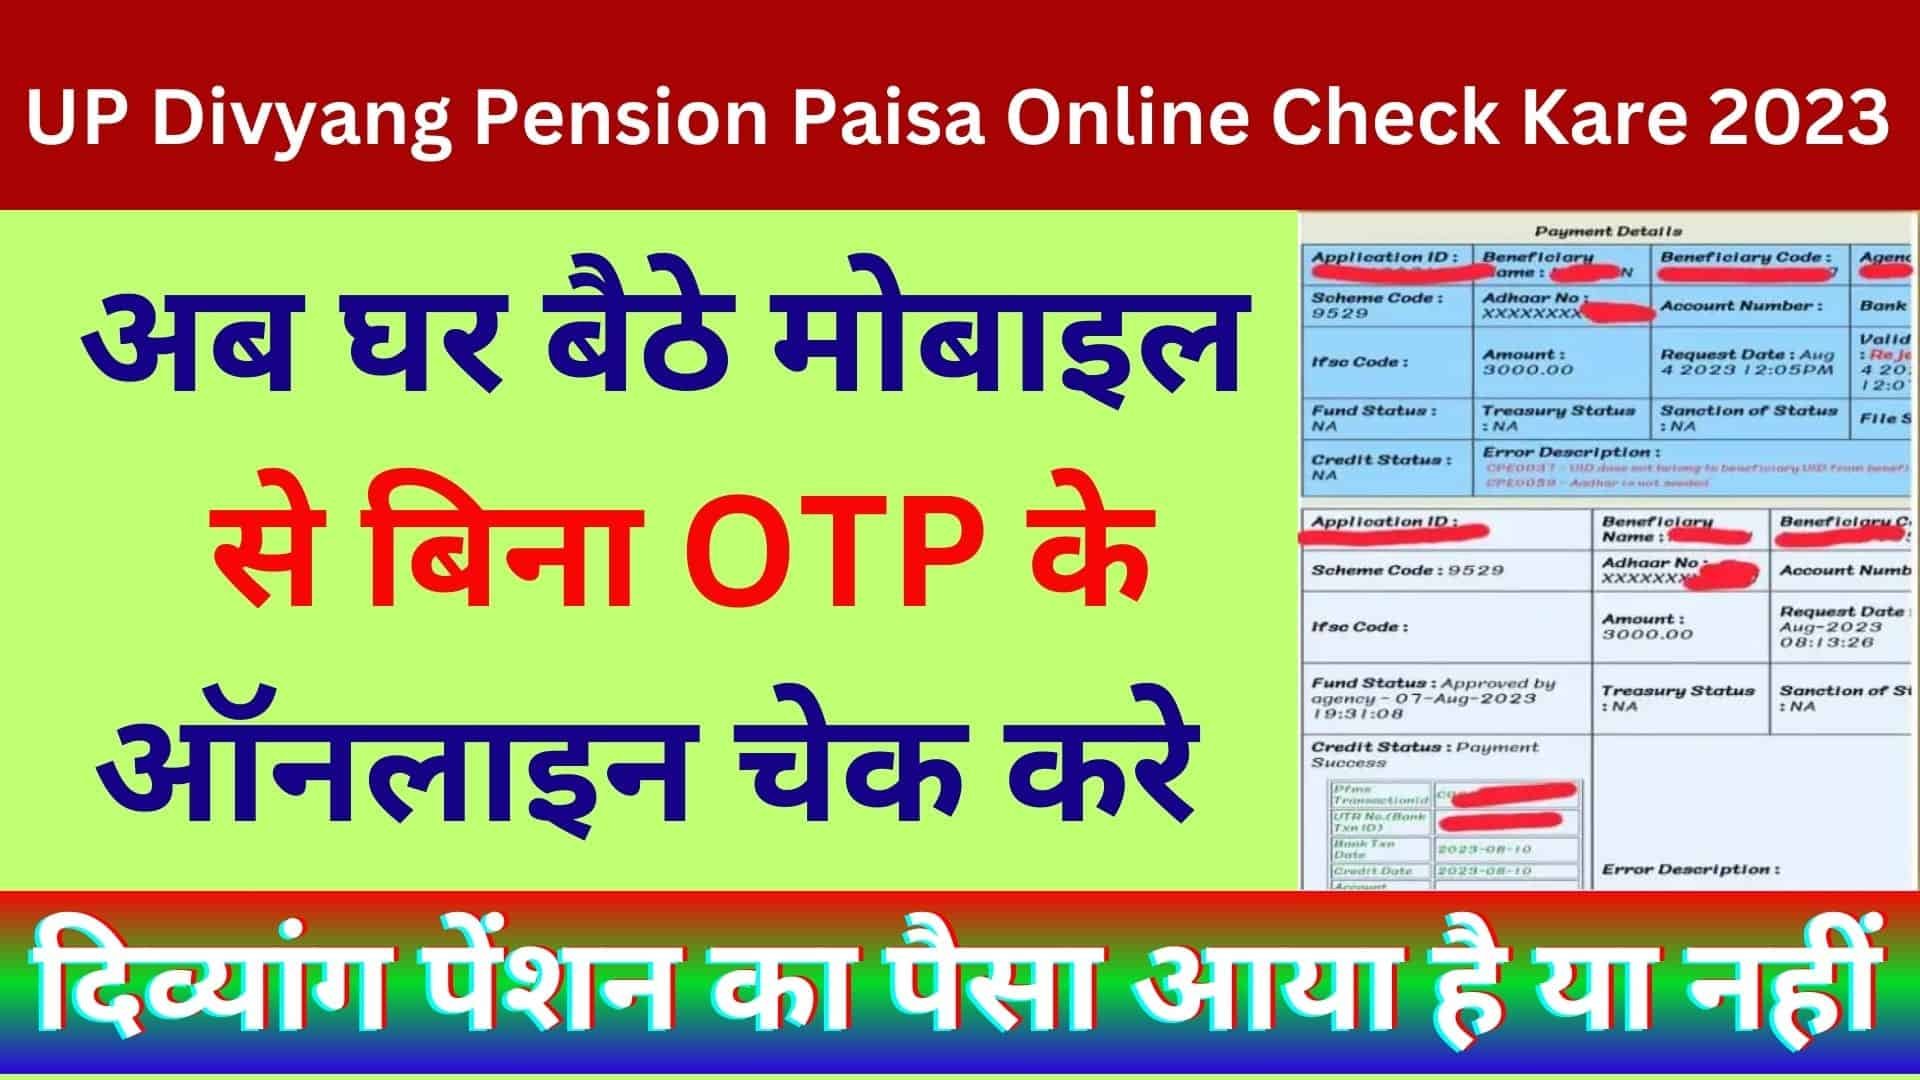 UP Divyang Pension Ka Paisa Online Kaise Check Kare 2023 : अब घर बैठे ऑनलाइन चेक करे दिव्यांग पेंशन का पैसा आया है या नहीं